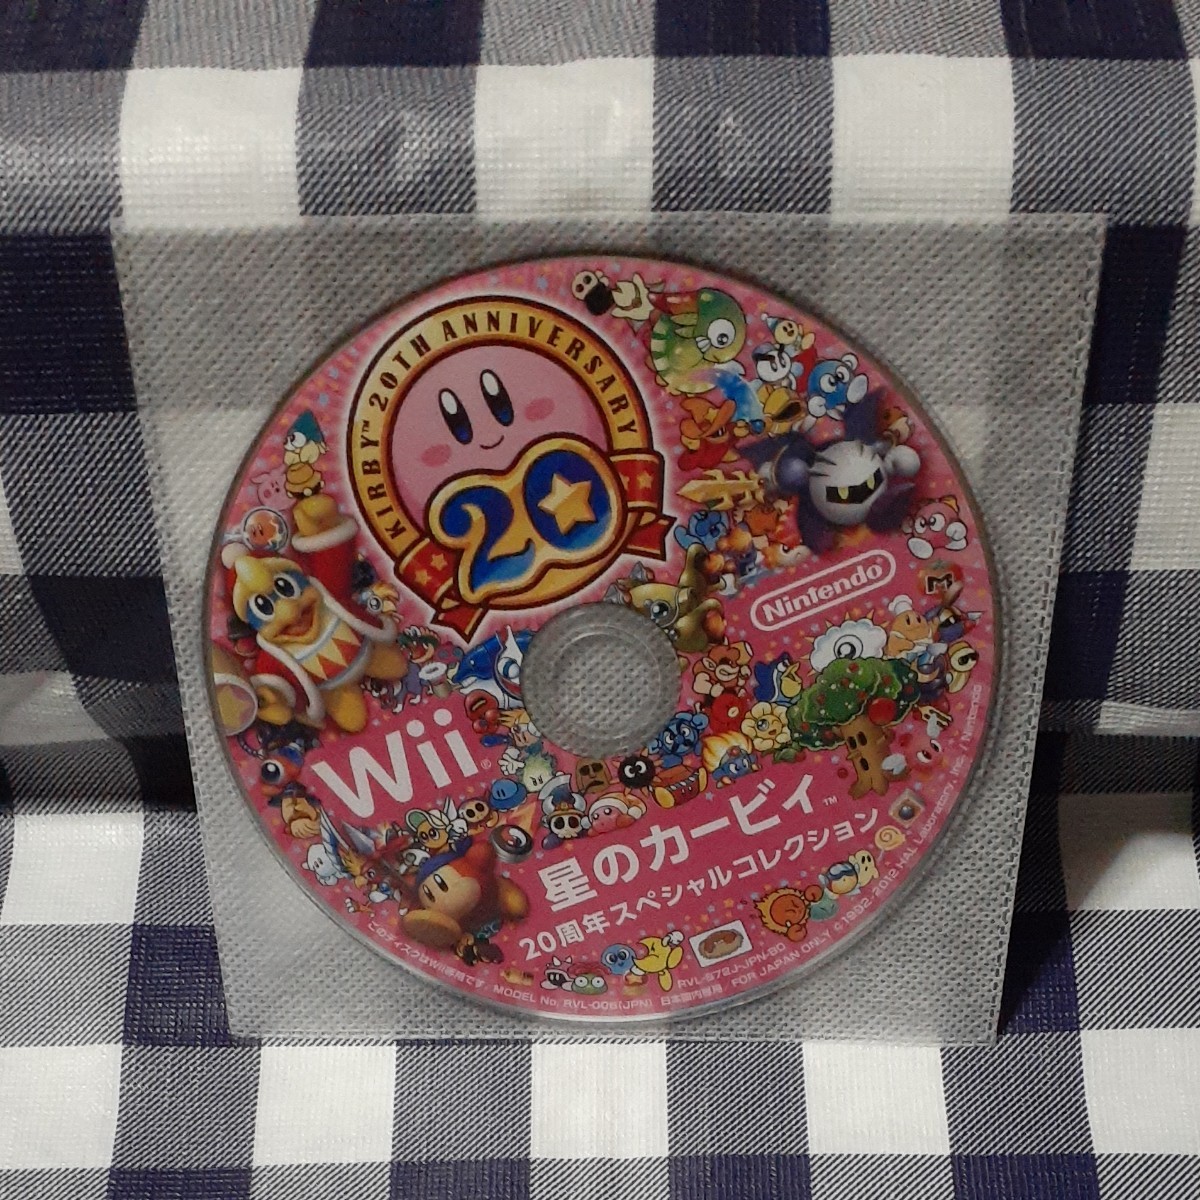 星のカービィ20周年スペシャルコレクション Wii